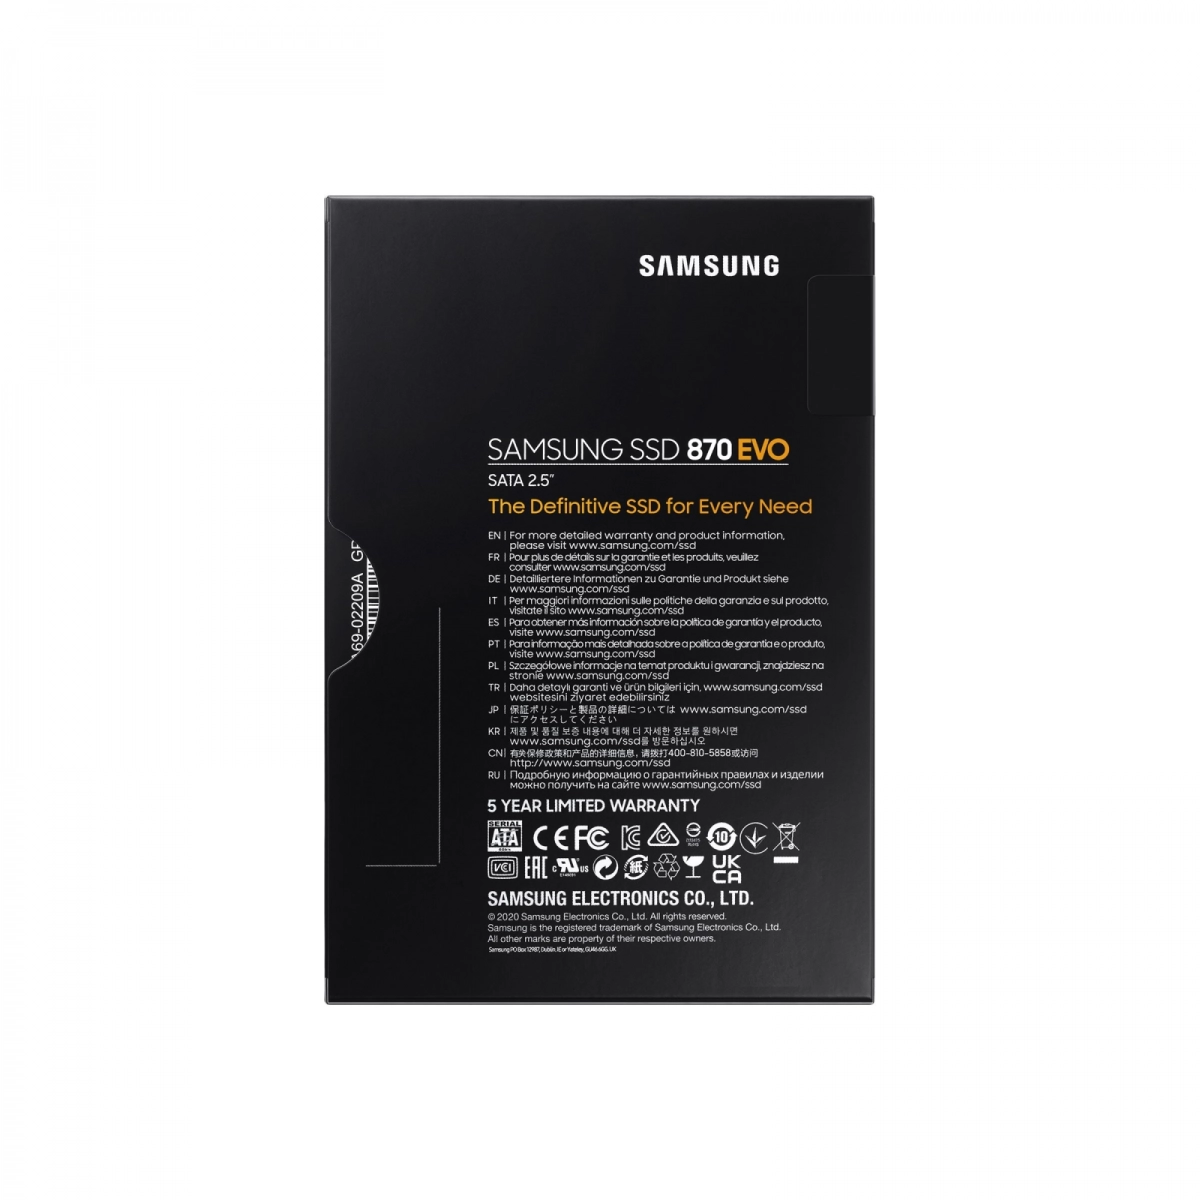 Notebook-Festplatte 1TB, SSD SATA3 für LENOVO ThinkPad Edge E530